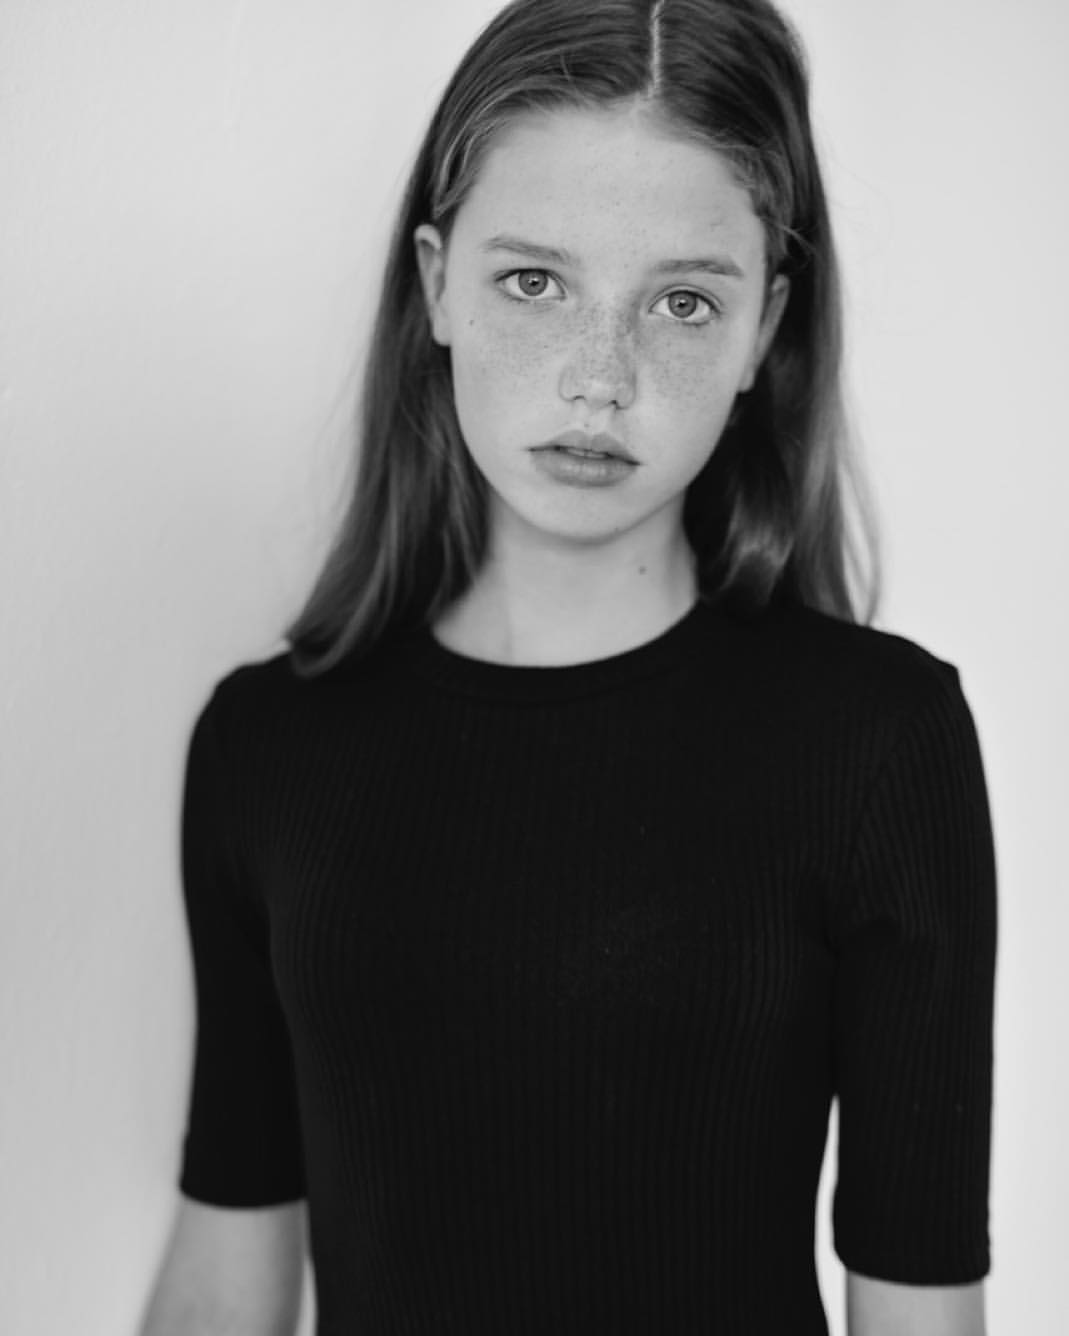 Model Monochrome Freckles Children Black Dress Long Hair Portrait 1069x1336